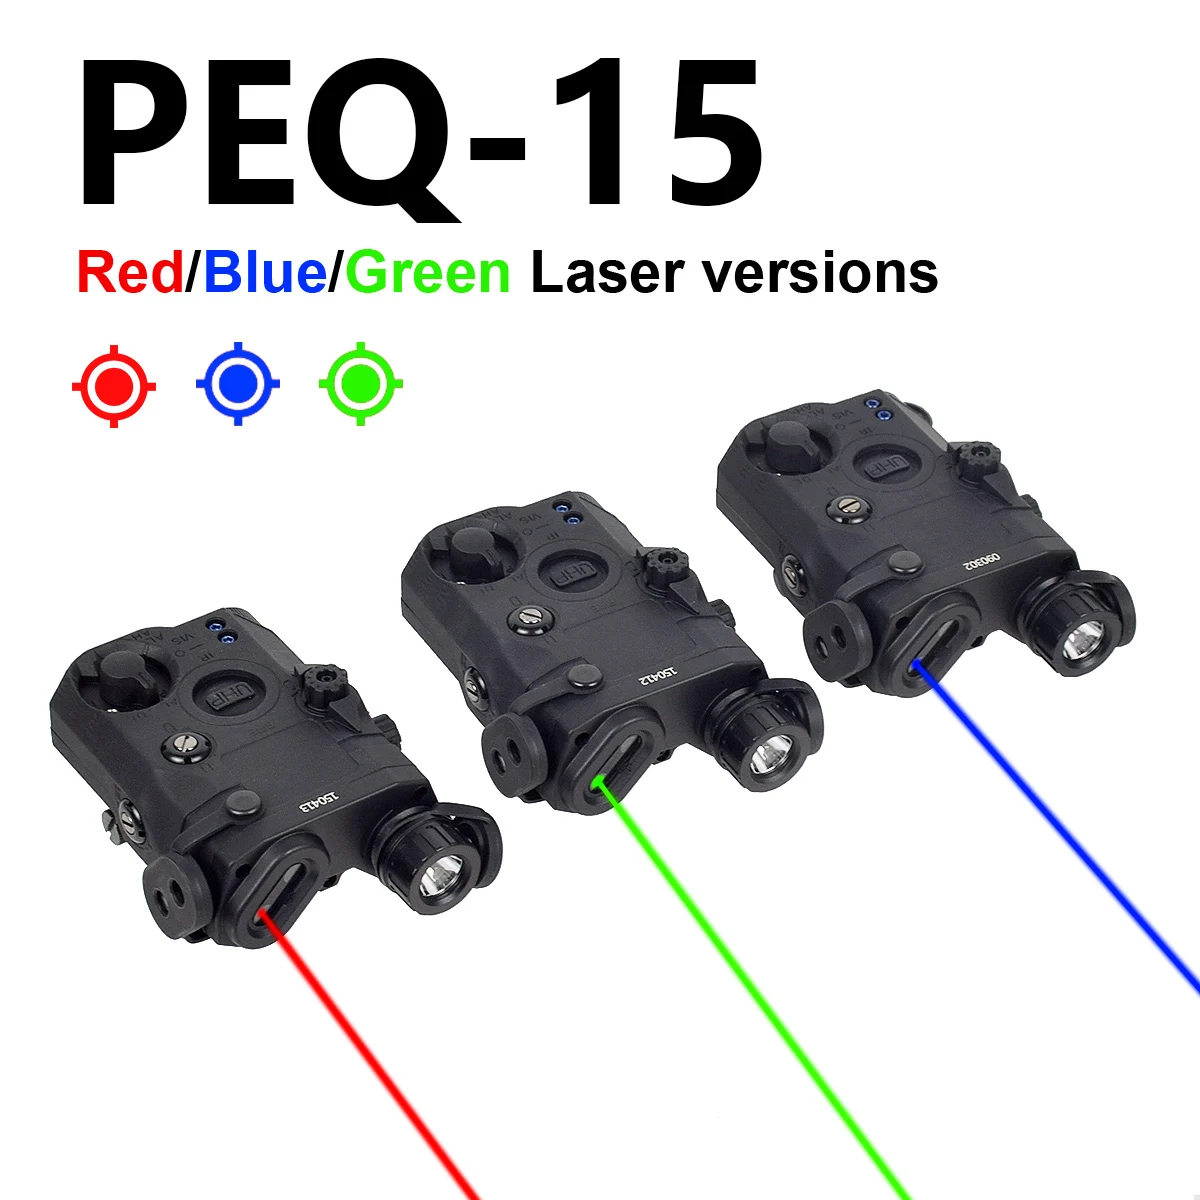 

Тактический лазерный прицел PEQ 15 с красной точкой зеленый синий 20 мм направляемый Регулируемый прицел Крепление для винтовки страйкбольный оптический прицел Аксессуары для охоты